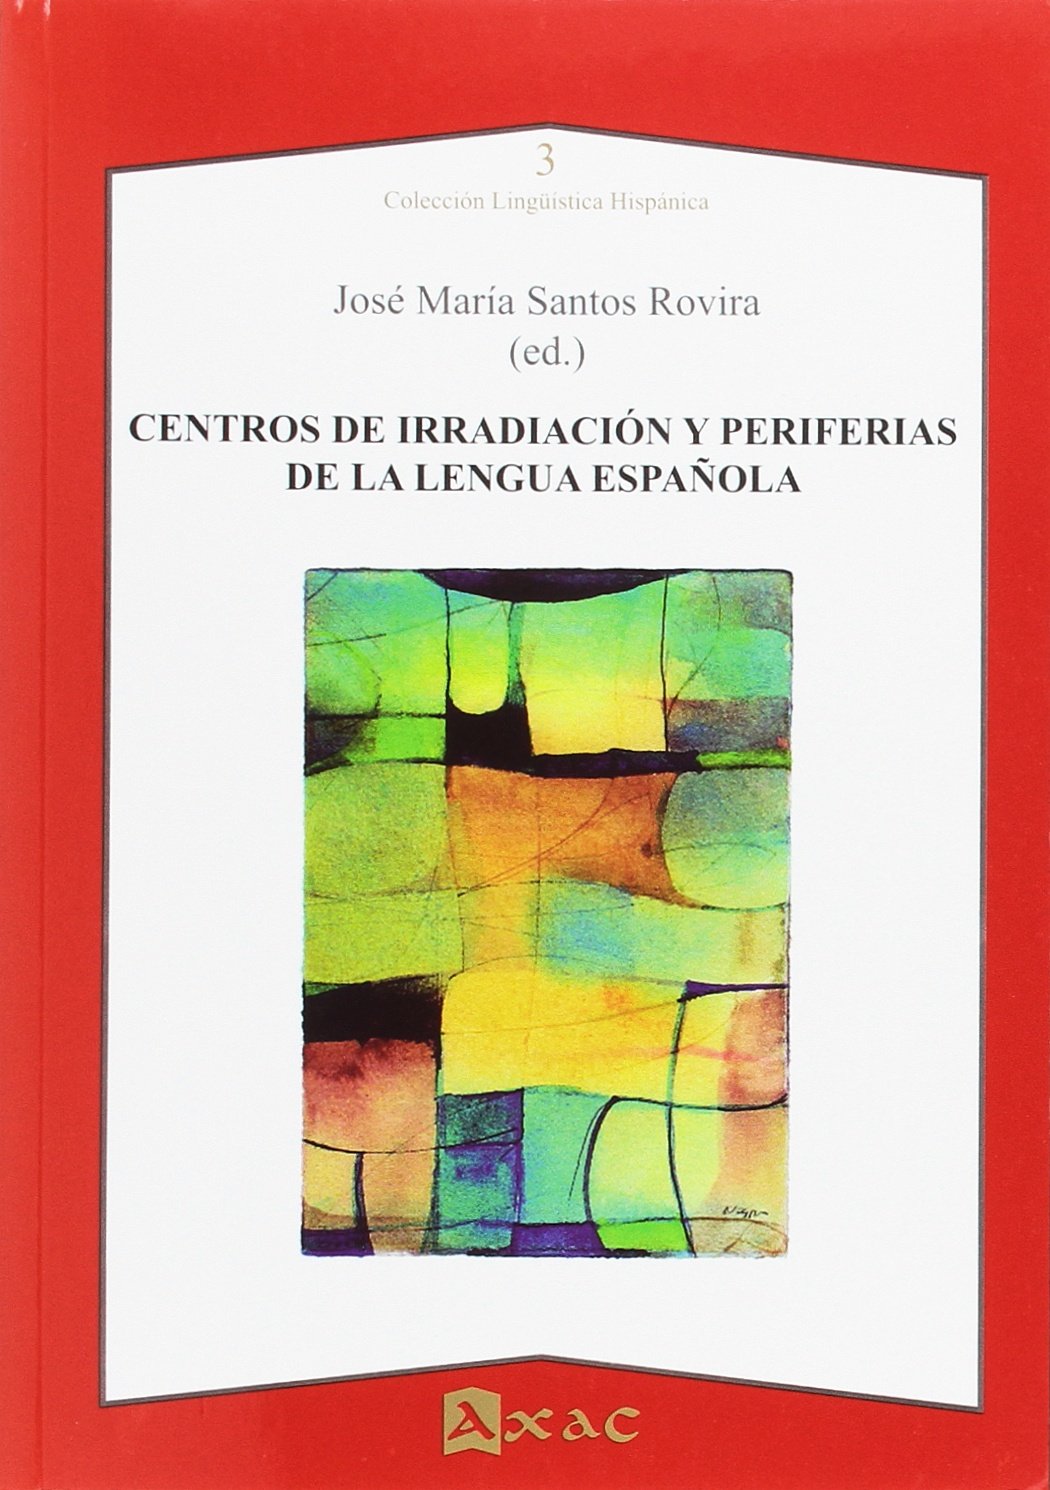 Imagen de portada del libro Centros de irradiación y periferias de la lengua española